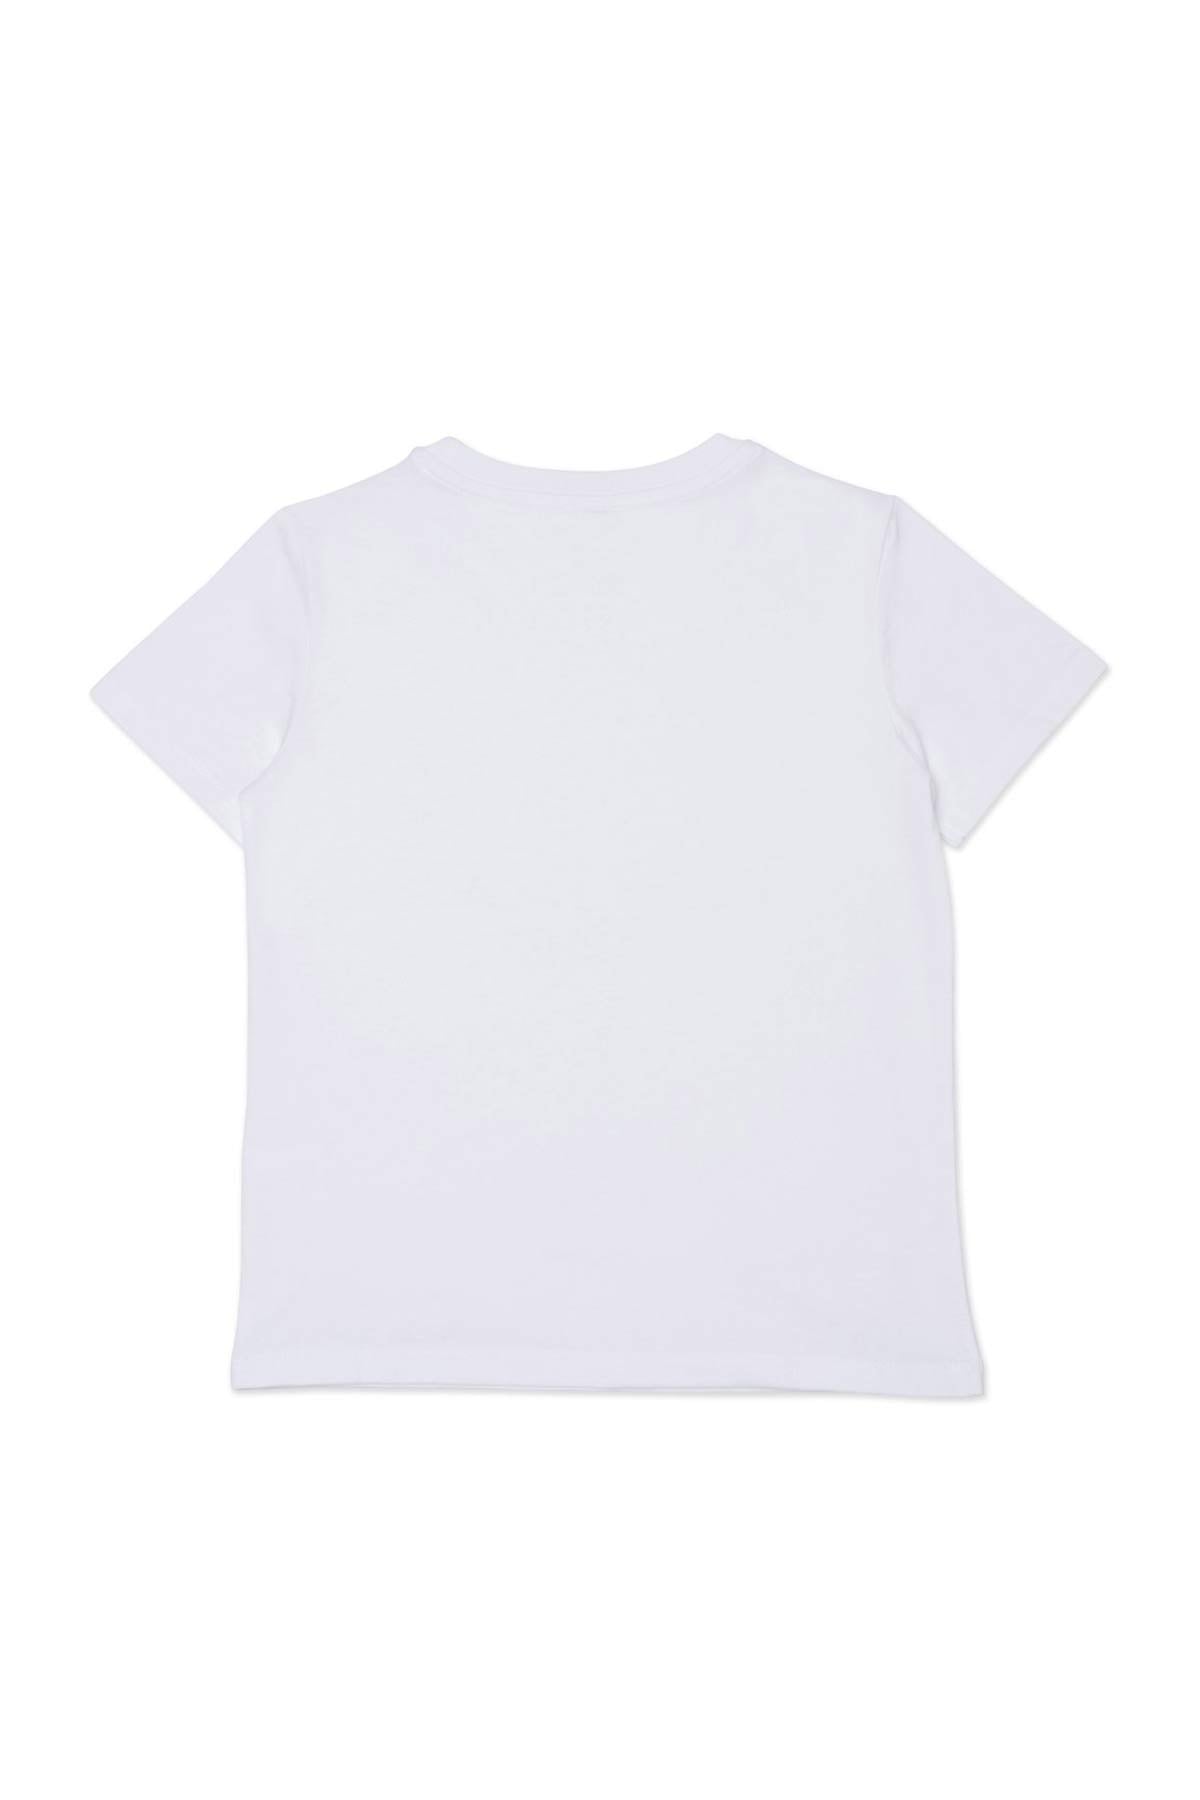 Kenzo Kids 2-6 Yaş Erkek Çocuk Kaplan Logolu T-shirt-Libas Trendy Fashion Store